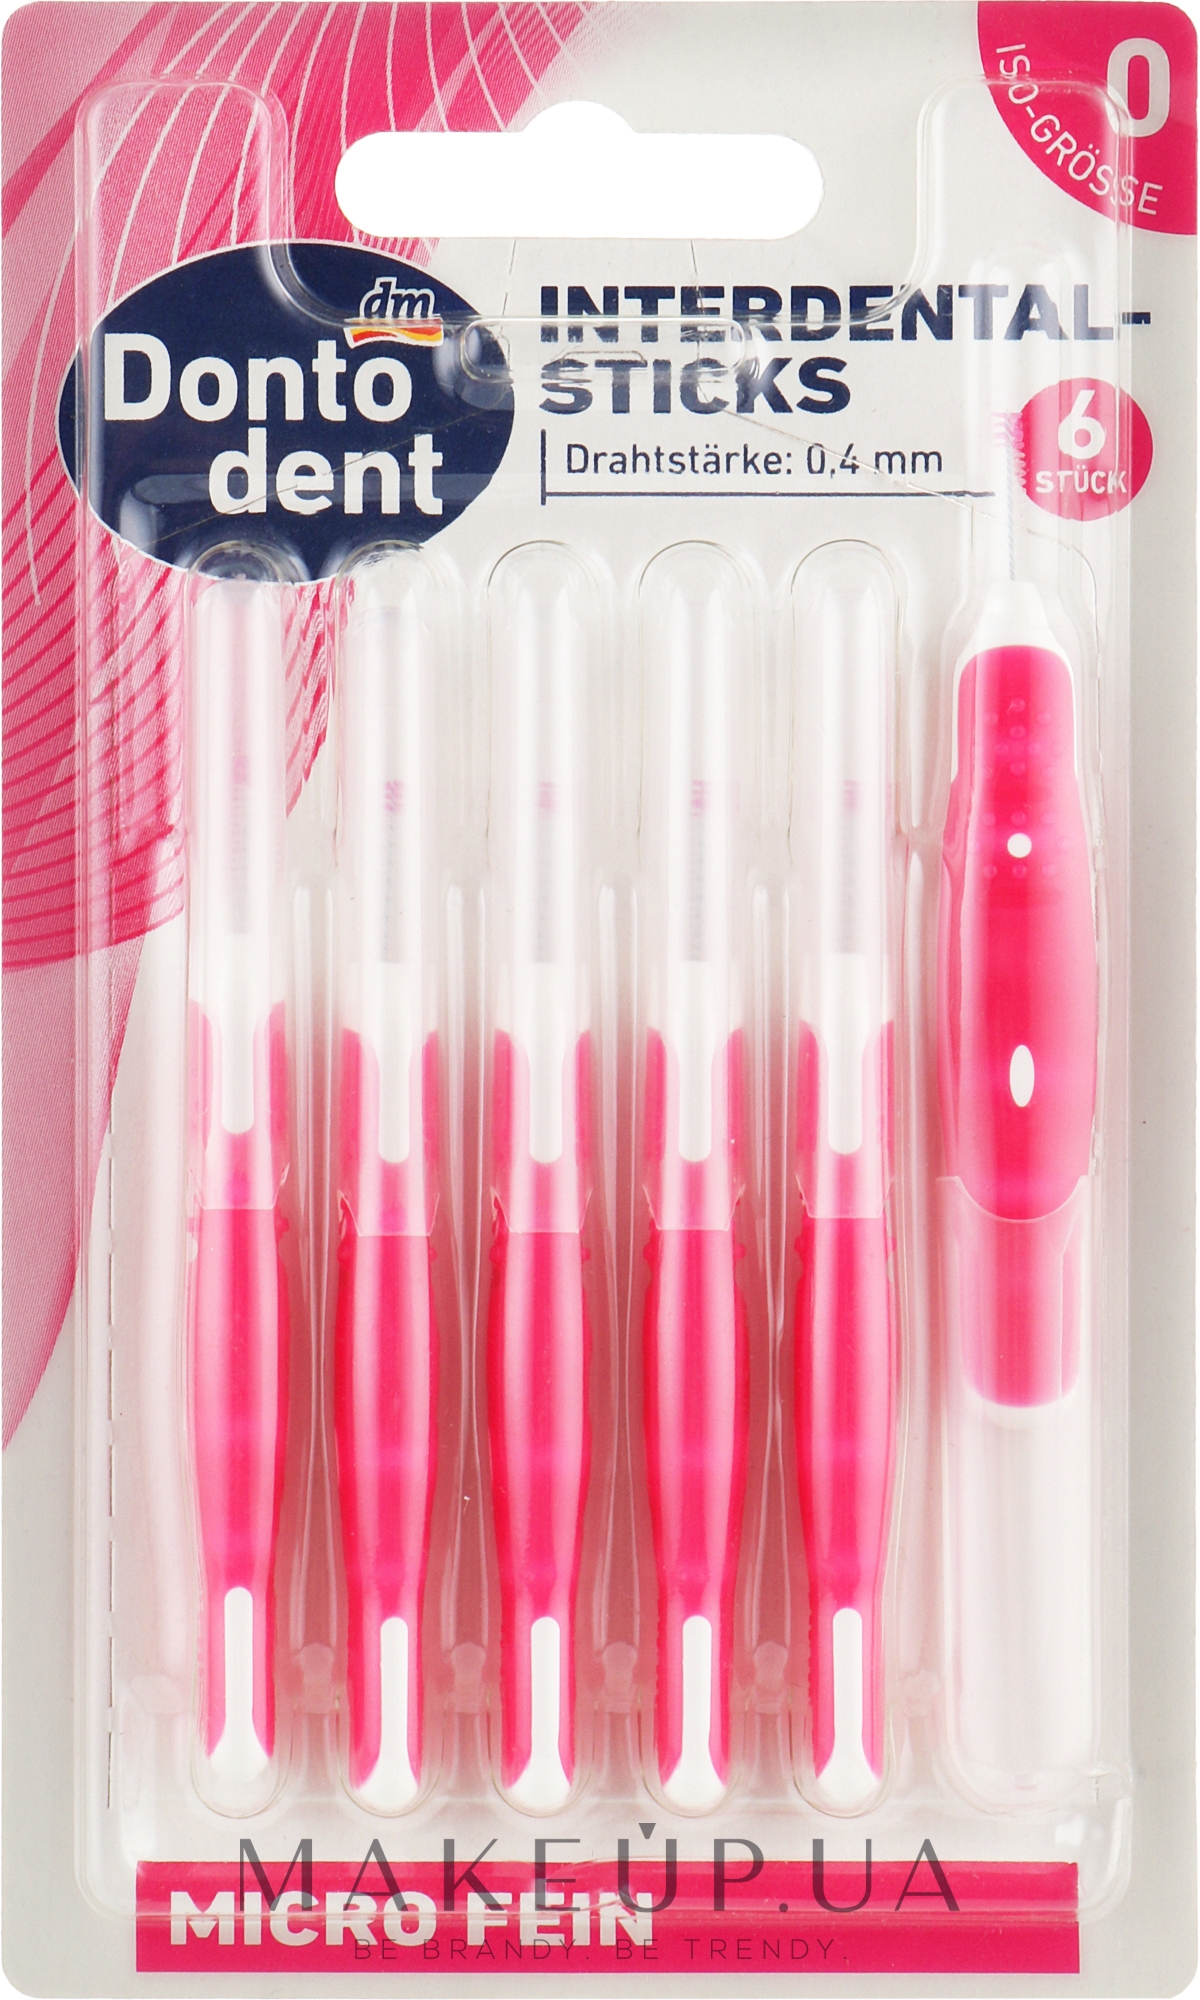 Щетки для межзубных промежутков, 0.4 мм, розовые - Dontodent Interdental-Sticks — фото 6шт